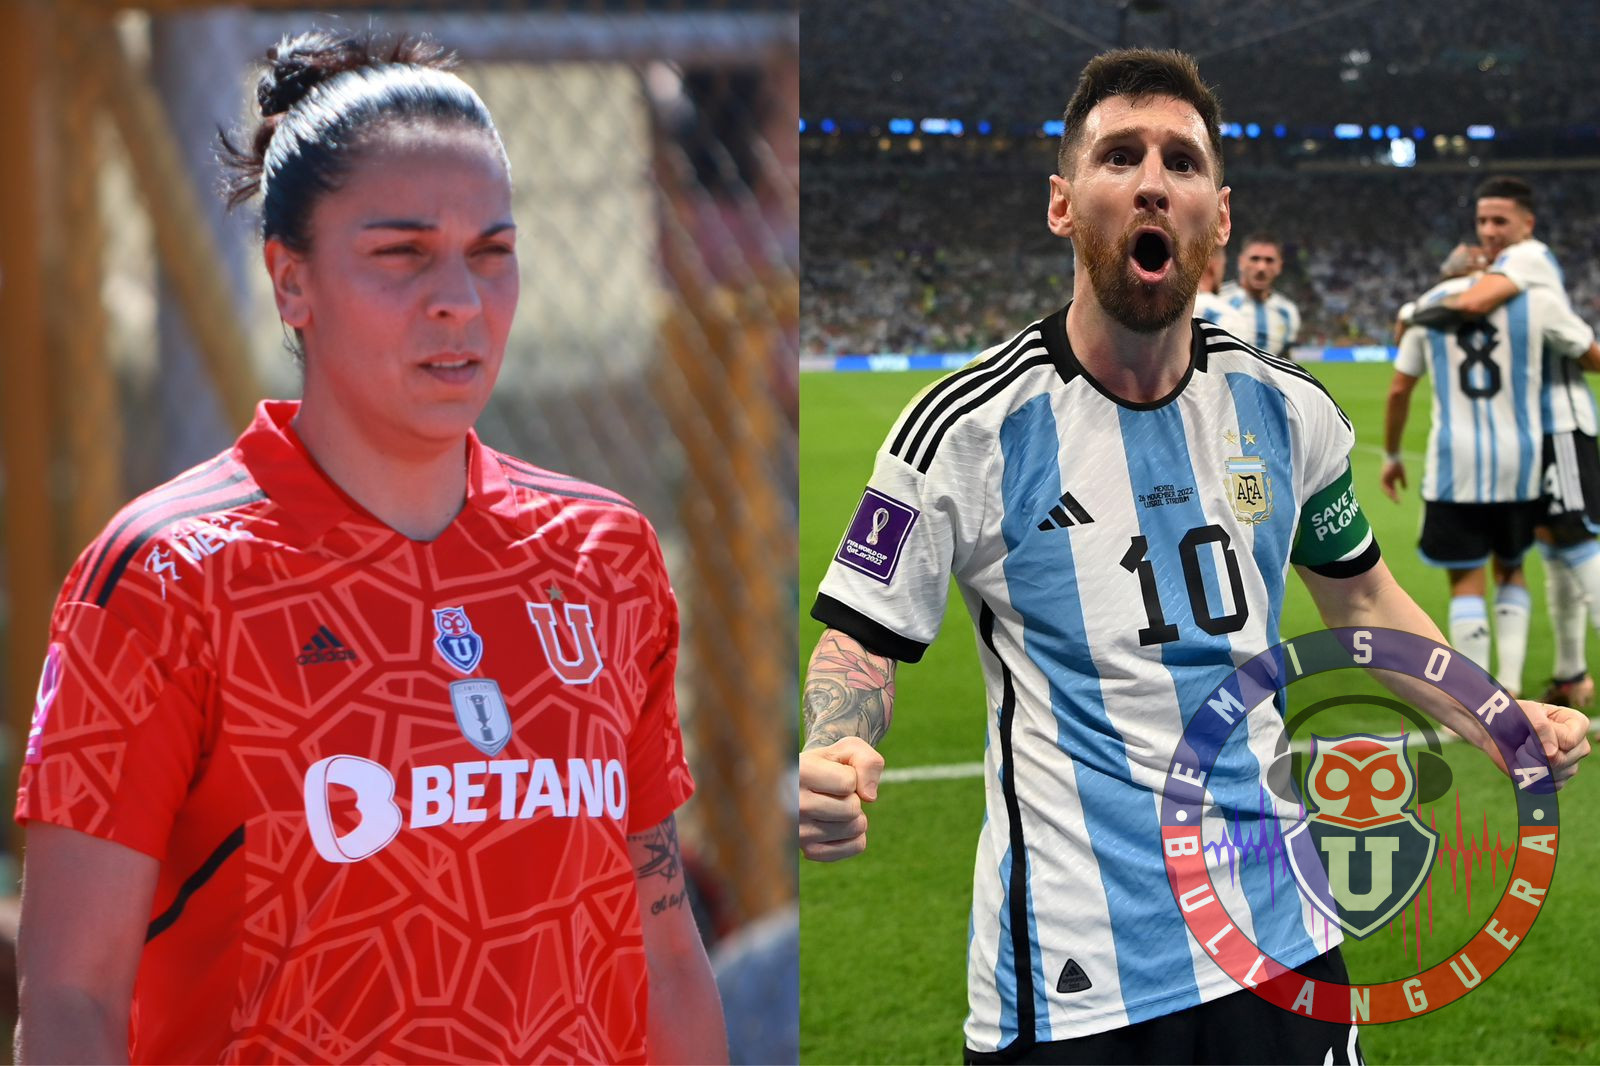 Vanina Correa aprueba el rendimiento de Lionel Messi en Qatar: “Estoy disfrutando de verlo en el nivel que está”